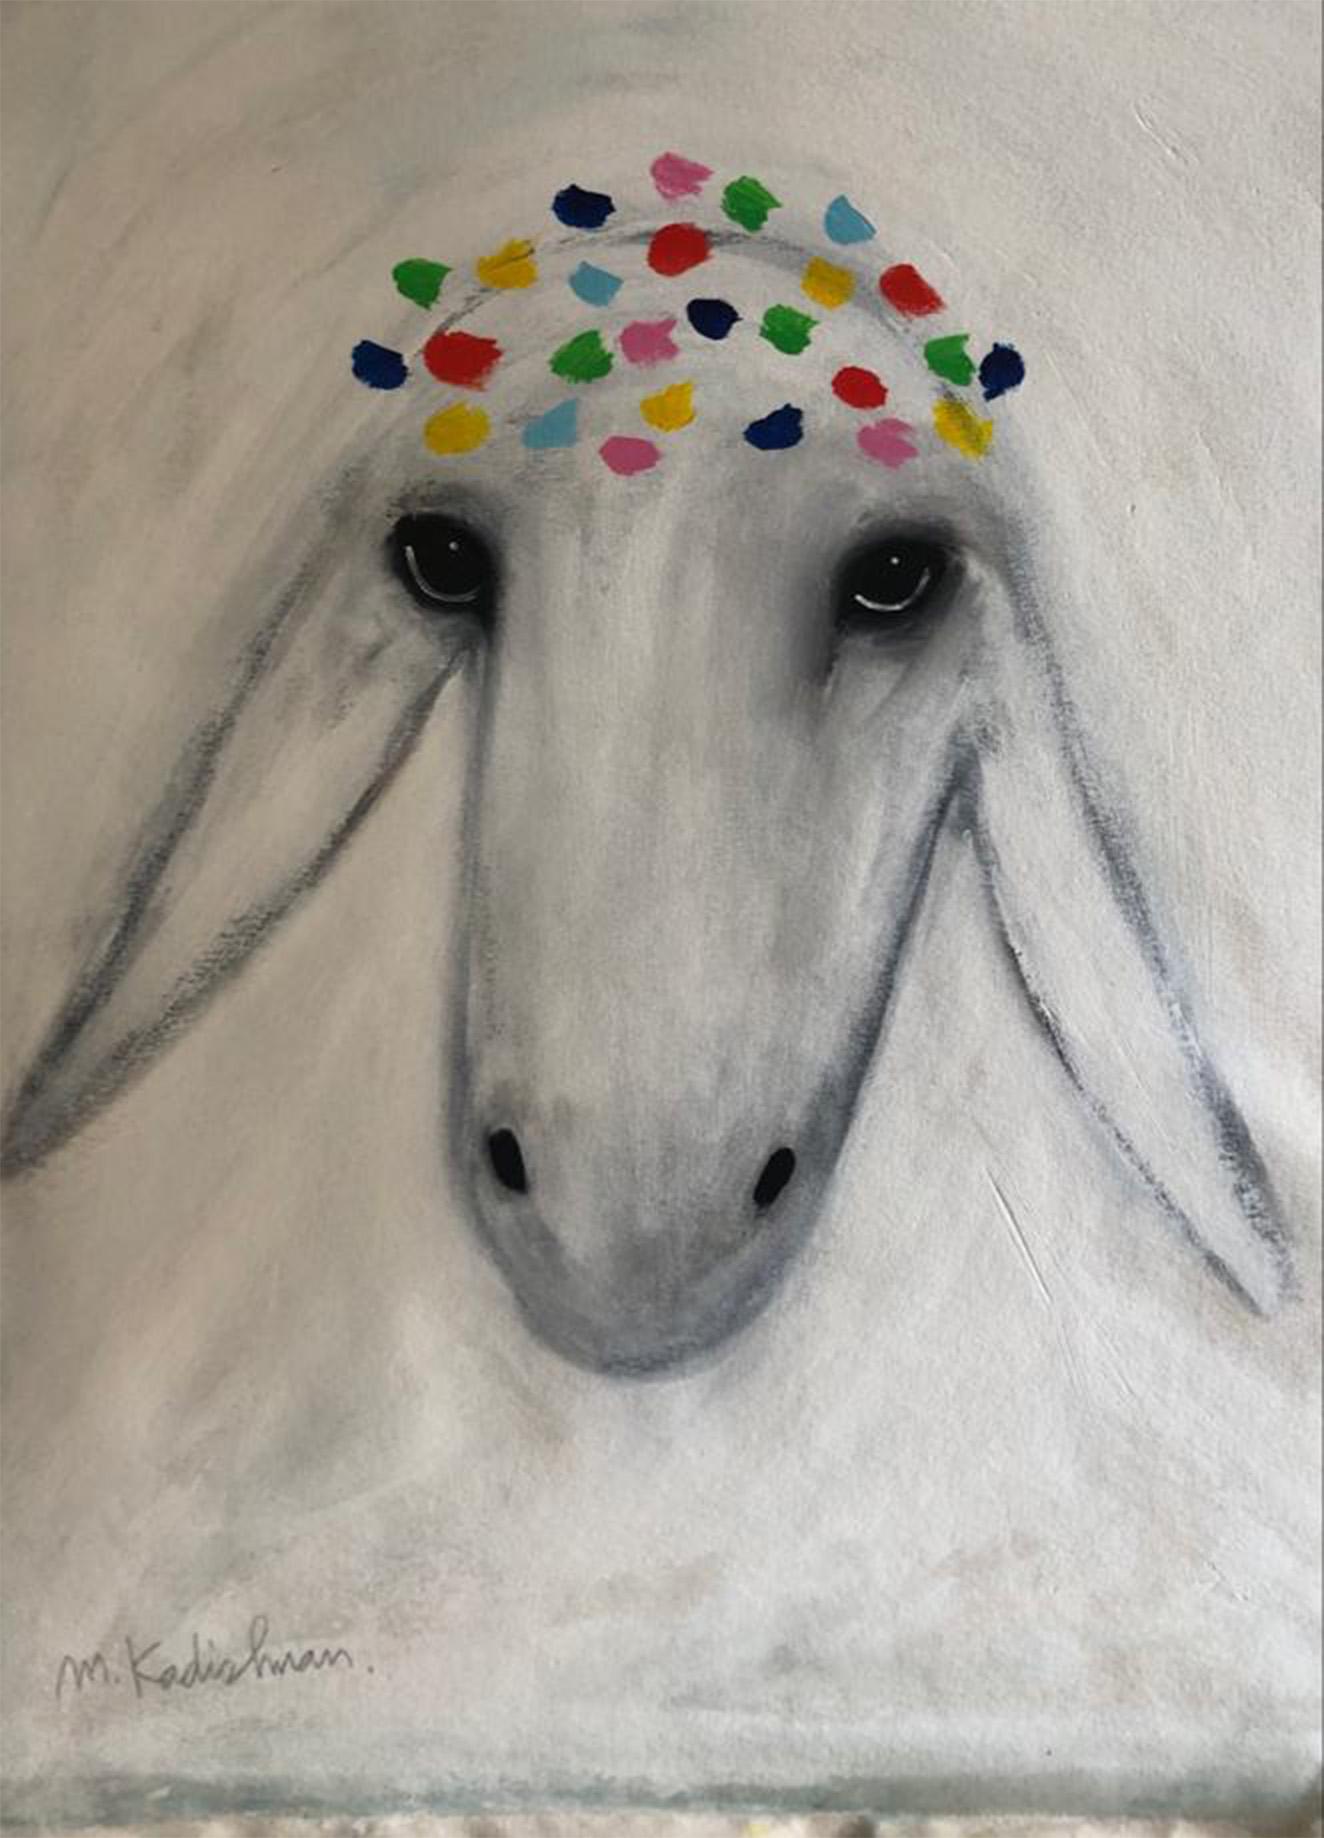 Menashe Kadishman, Tête de mouton, peinture symboliste, peinture colorée, art israélien, art israélien